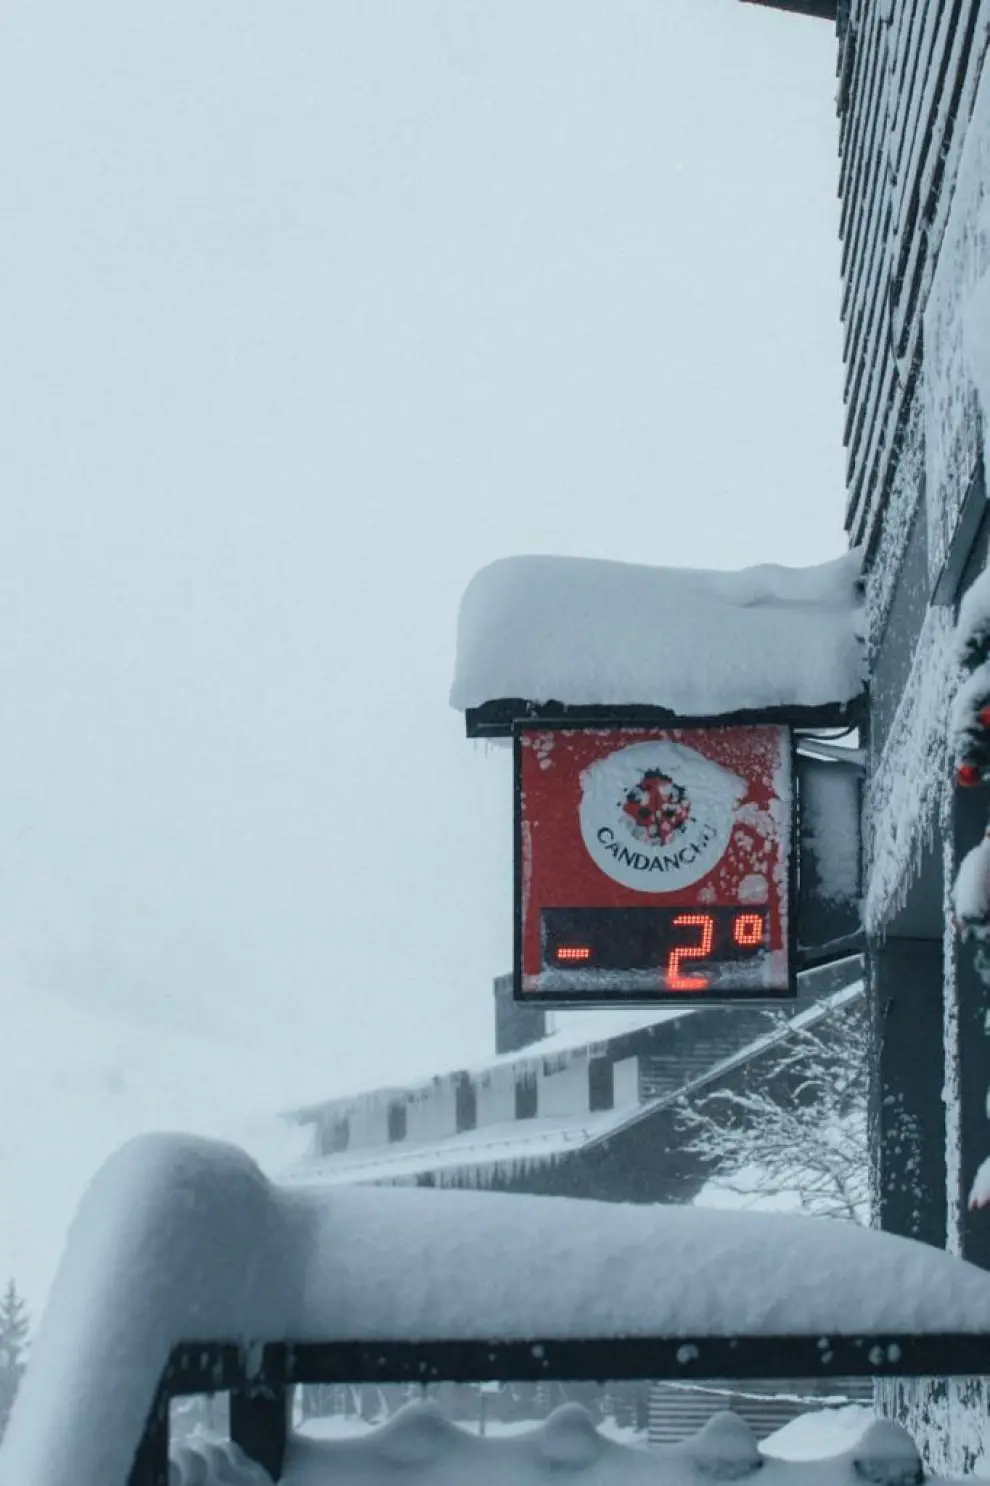 La nevada toma fuerza en las estaciones del Pirineo y deja circulación difícil en algunos puntos